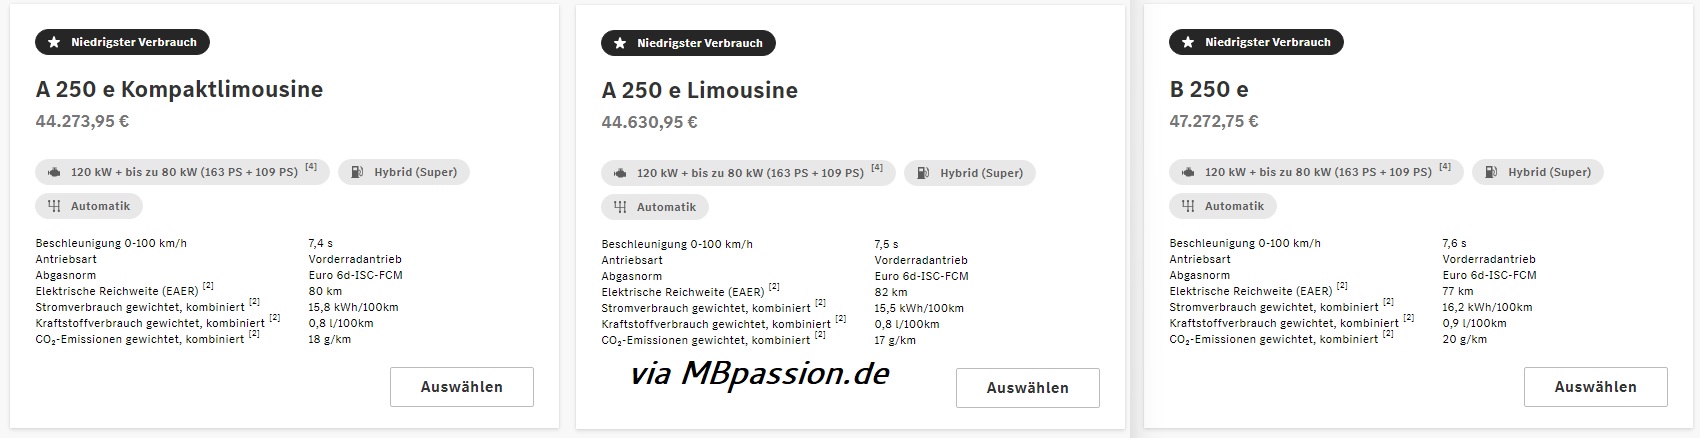 Online-Konfigurator verrät Preise der Kompakt Plug-In Hybride von Mercedes-Benz